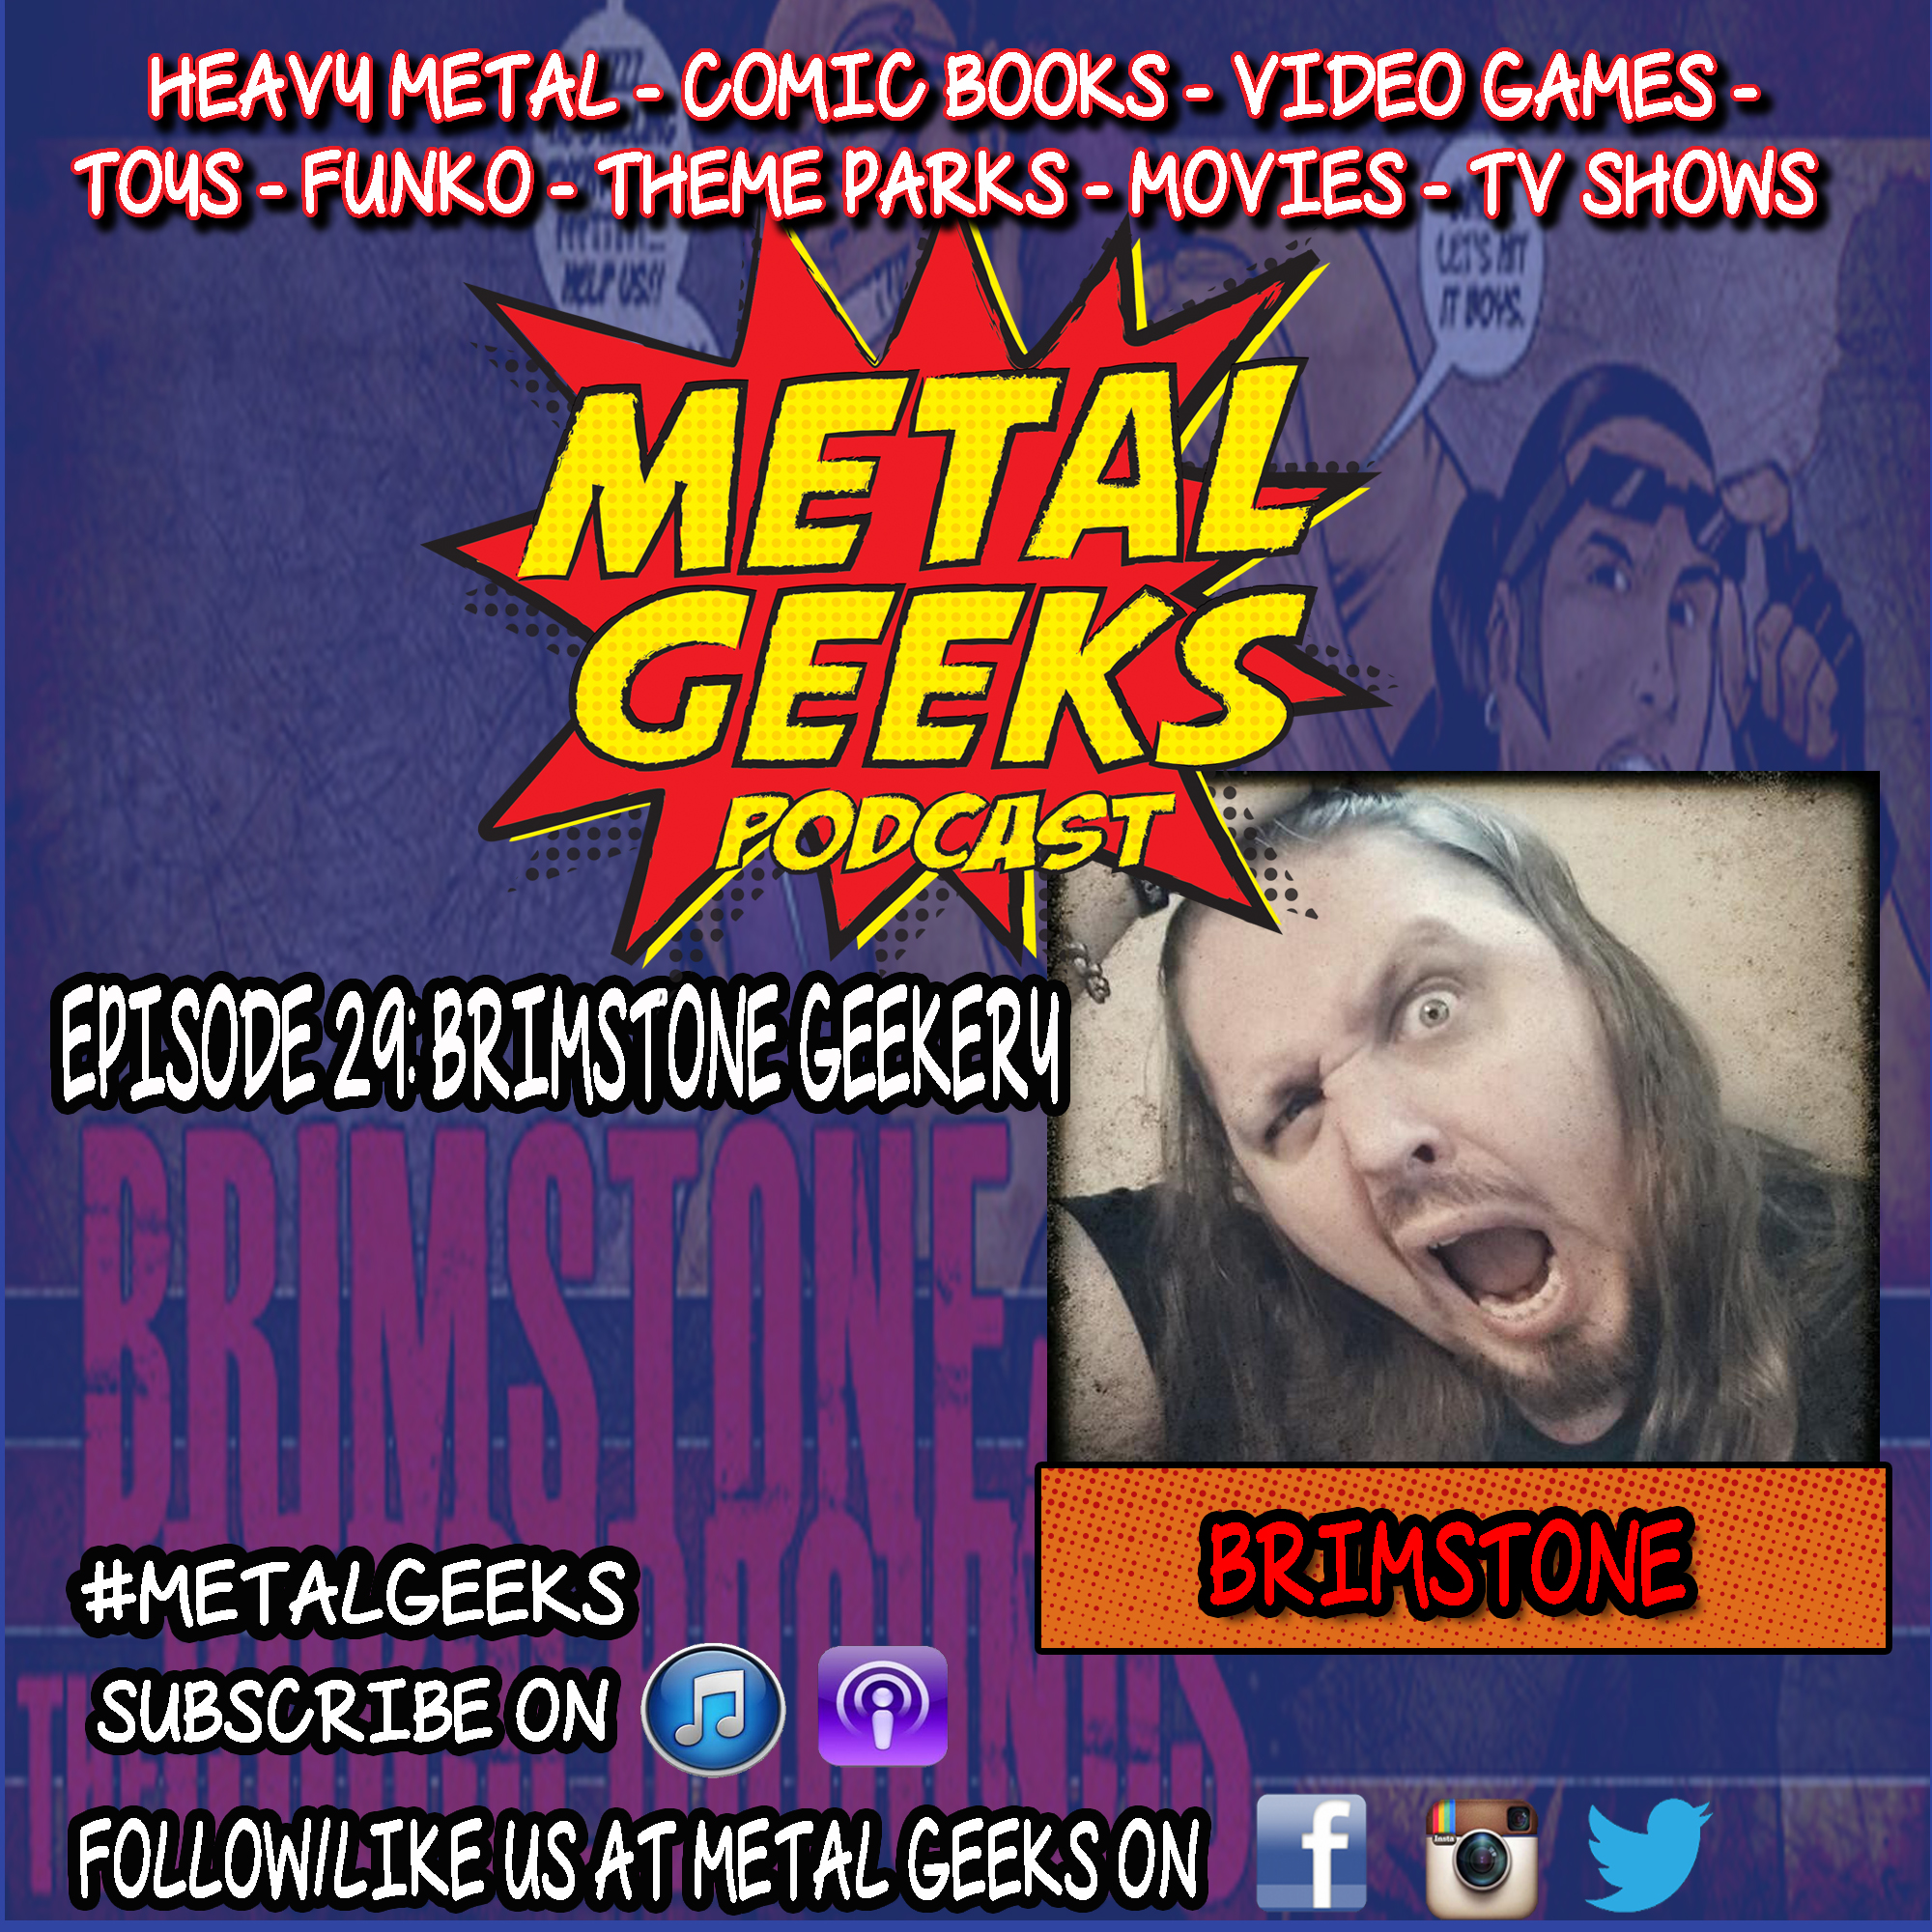 Metal Geeks 29: Brimstone Geekery